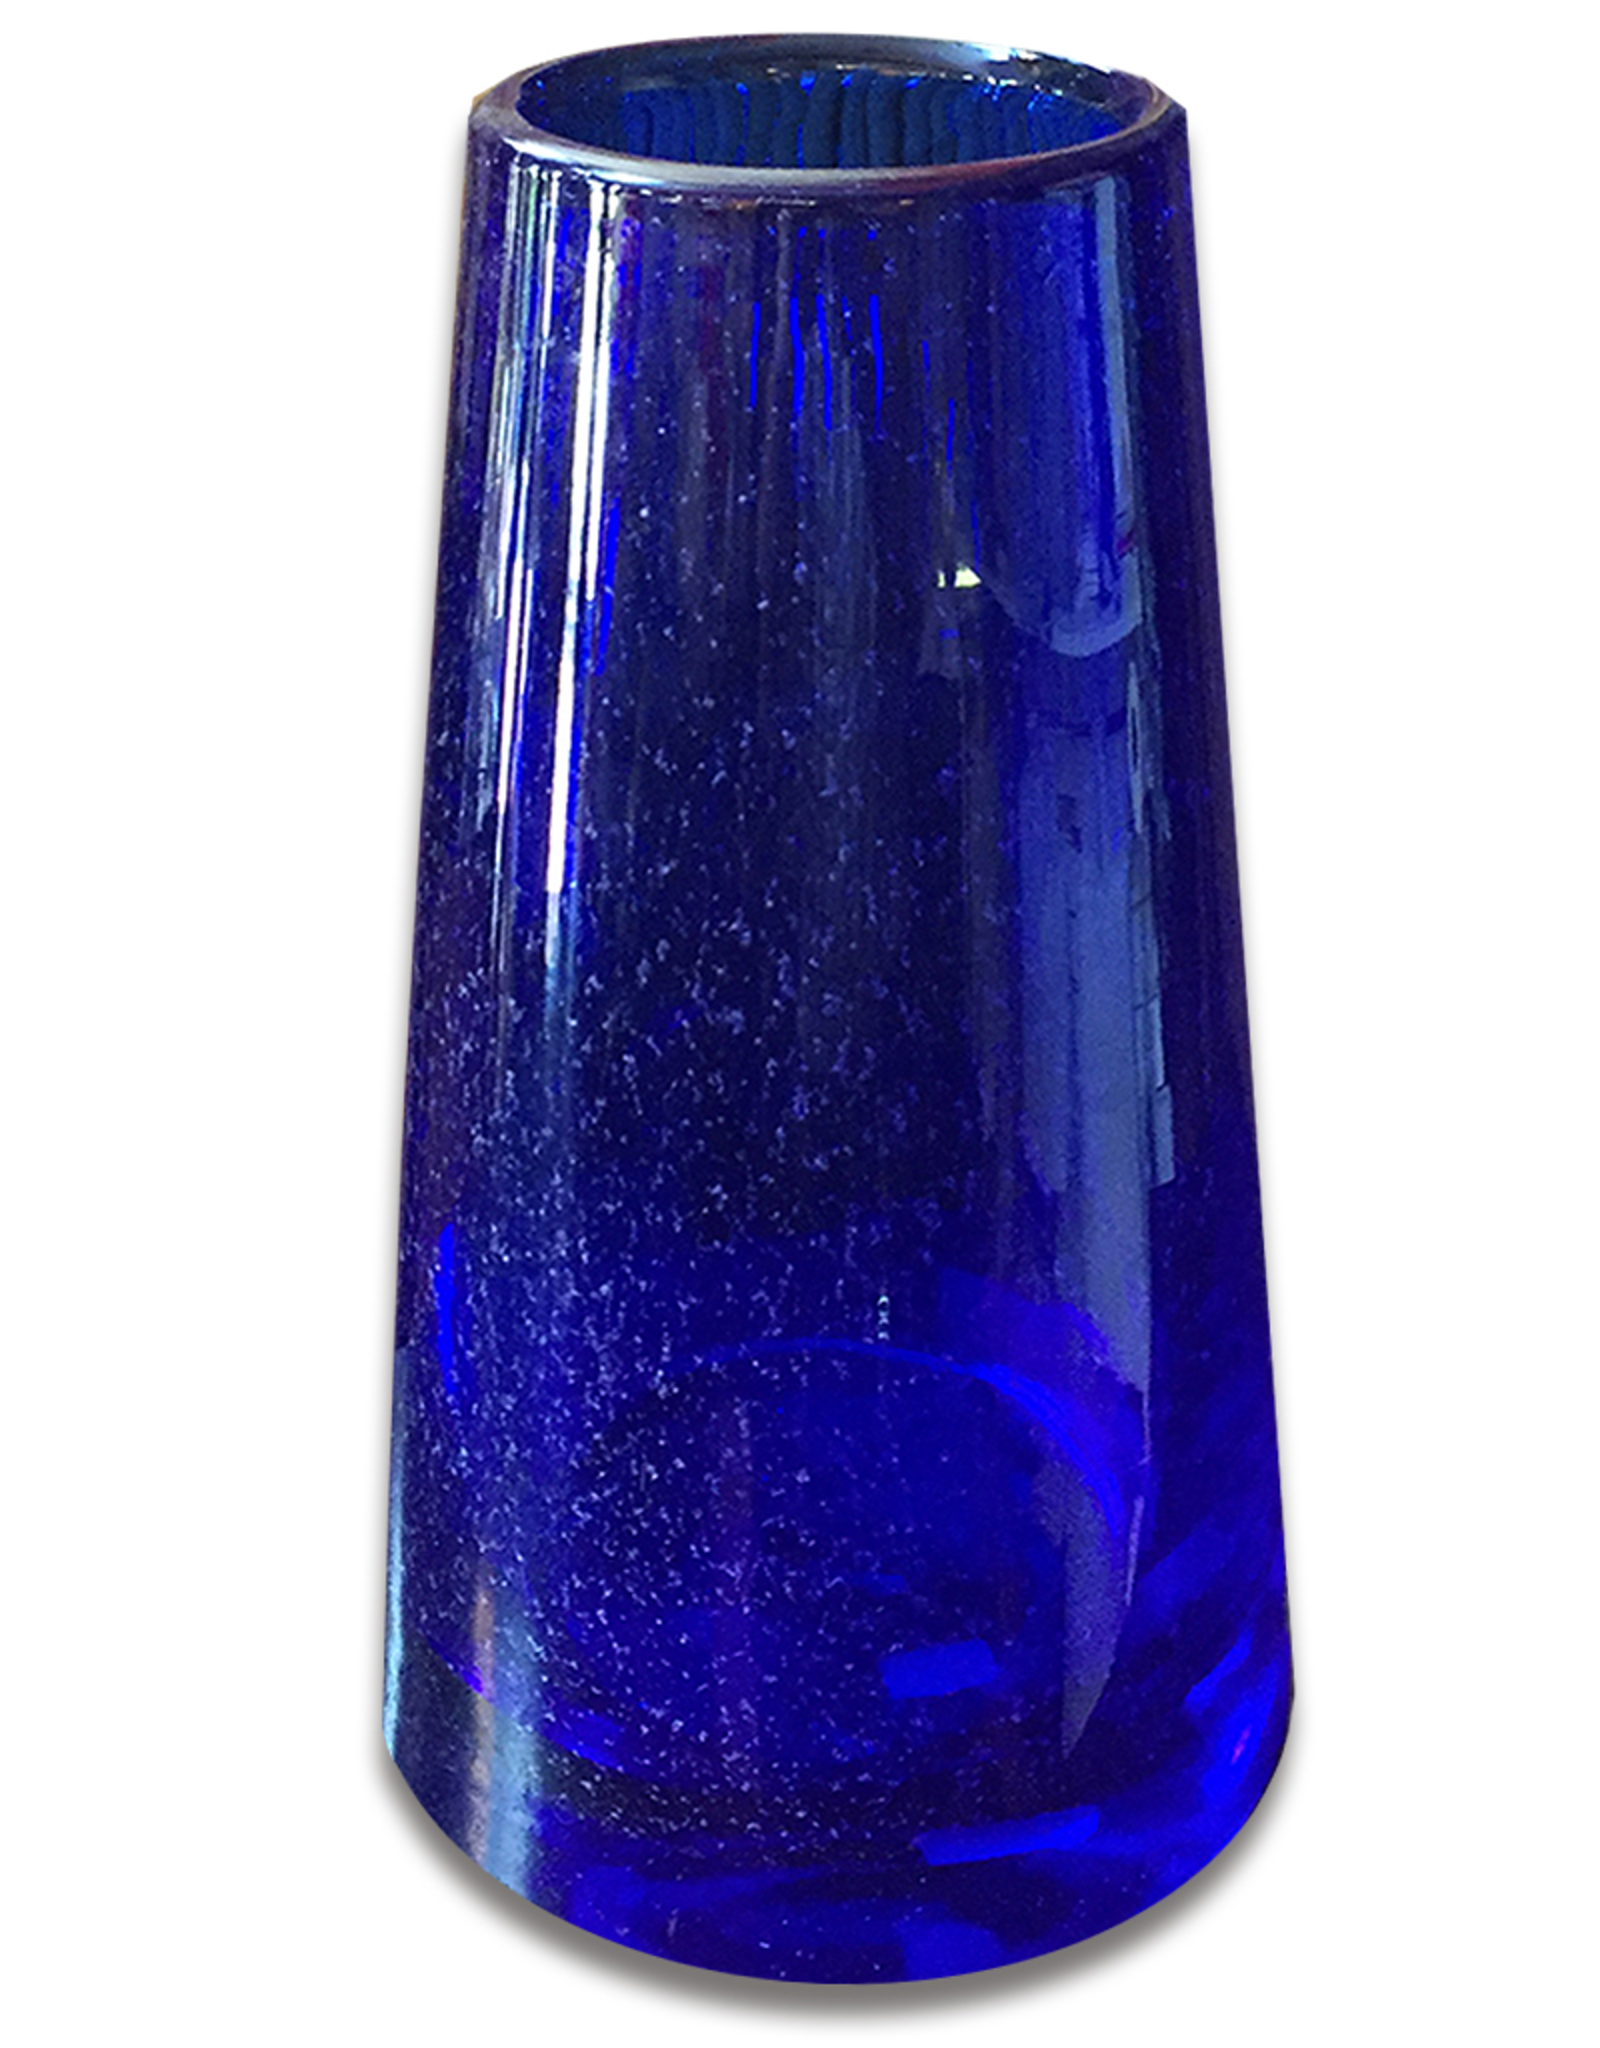 Volcano Cobalt Blue Czech Art Glass Vase 12H